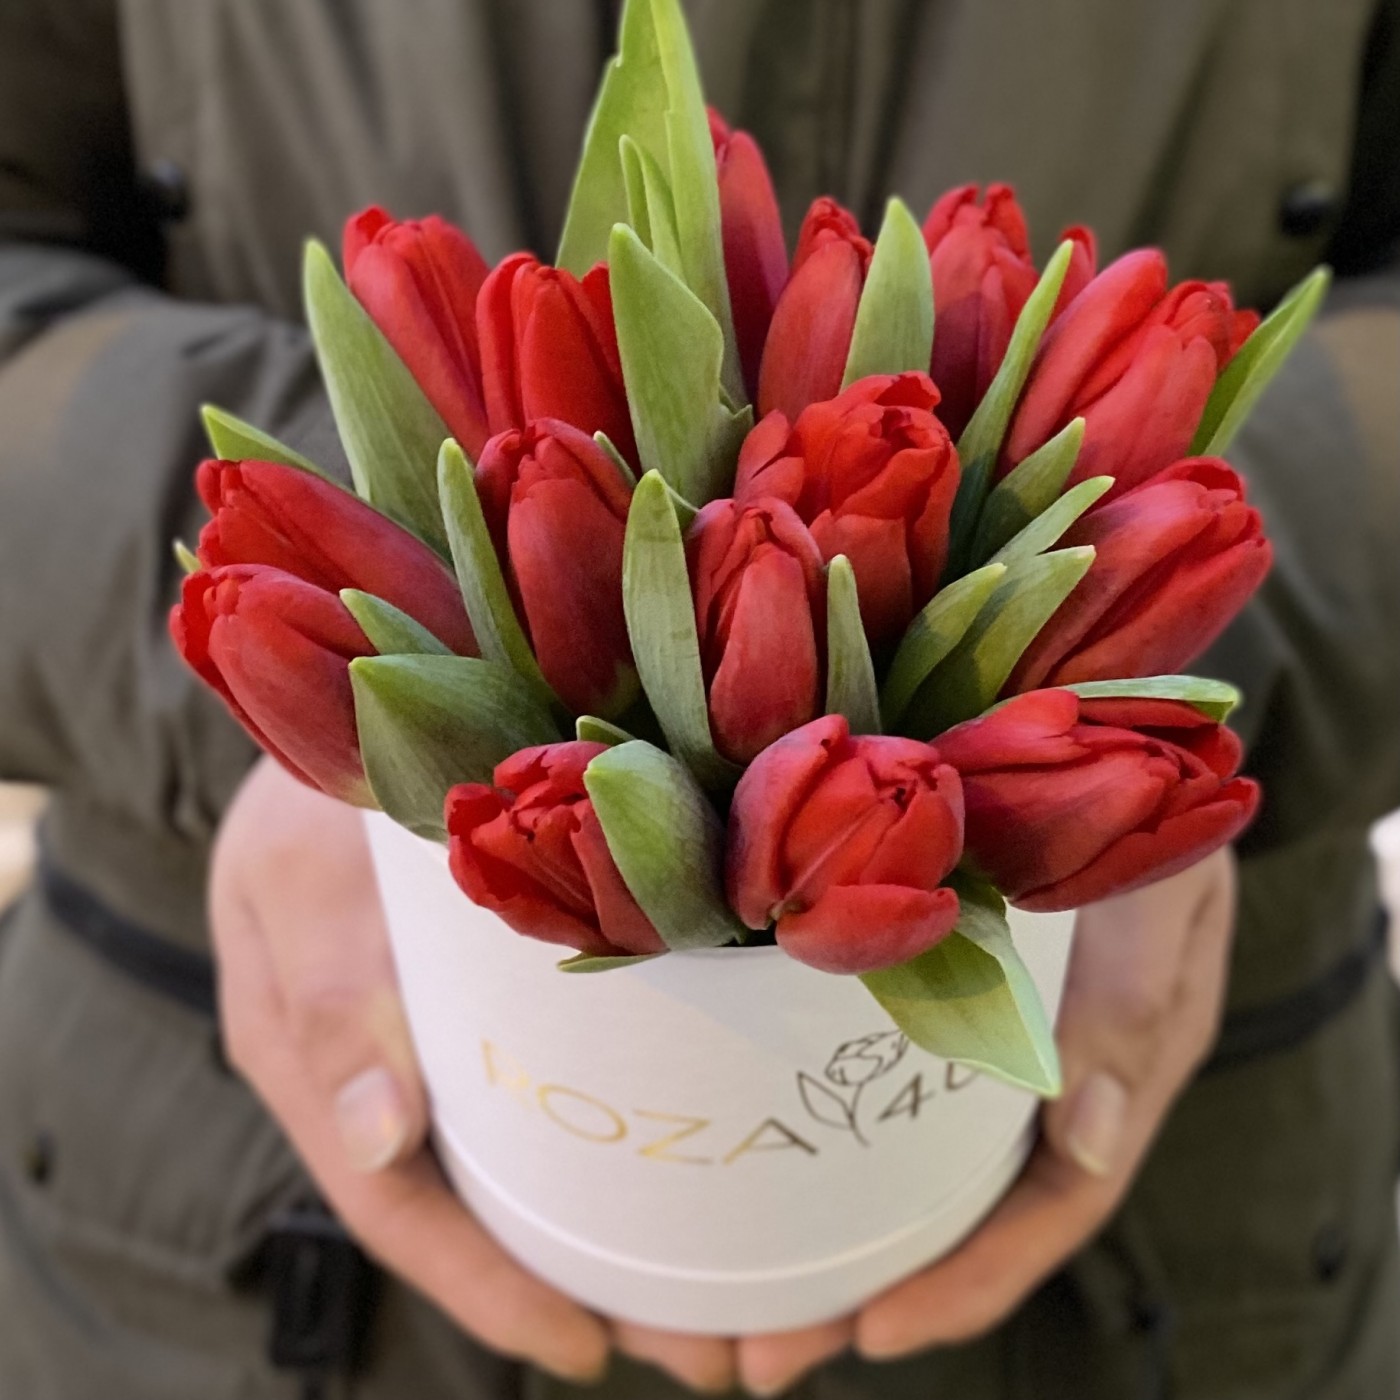 15 красных тюльпанов в коробке